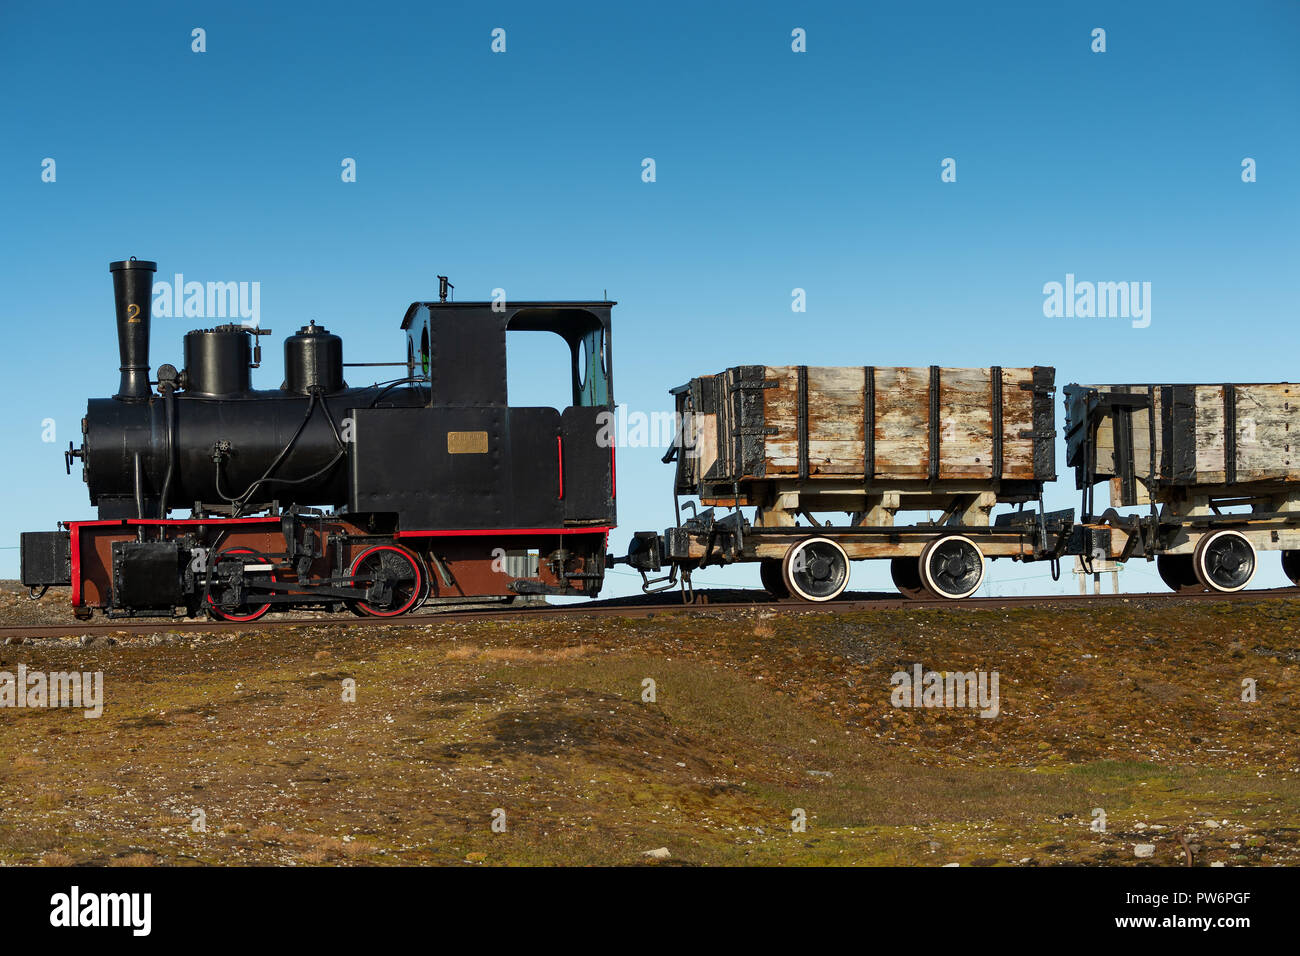 Le train de la mine historique, Ny-Alesund, Spitsbergen, Svalbard, îles Svalbard et Jan Mayen (Norvège) Banque D'Images